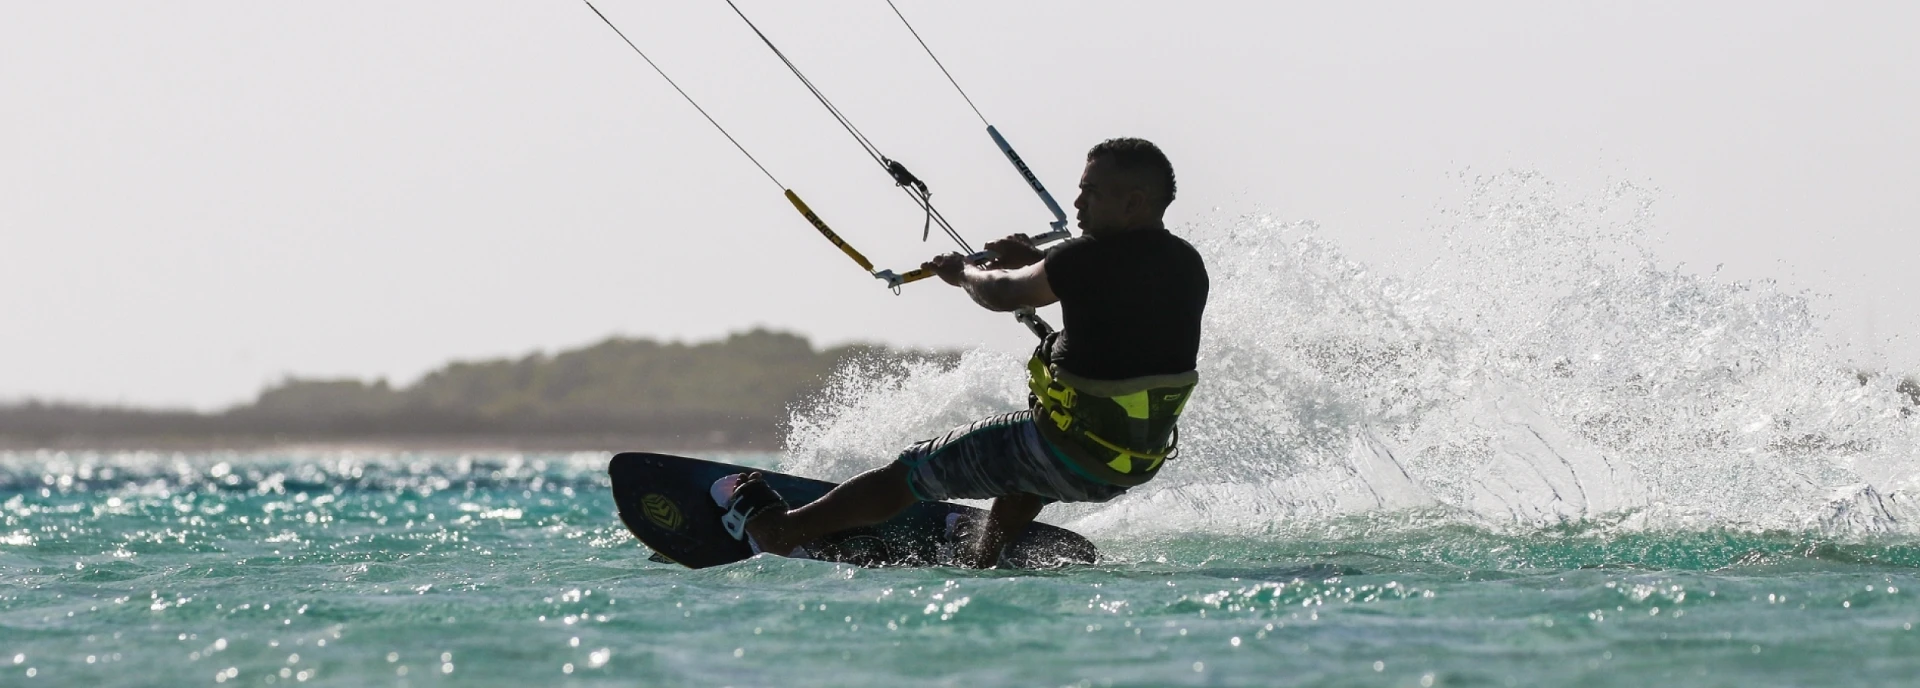 Kitesurfing: łapiąc karaibską bryzę